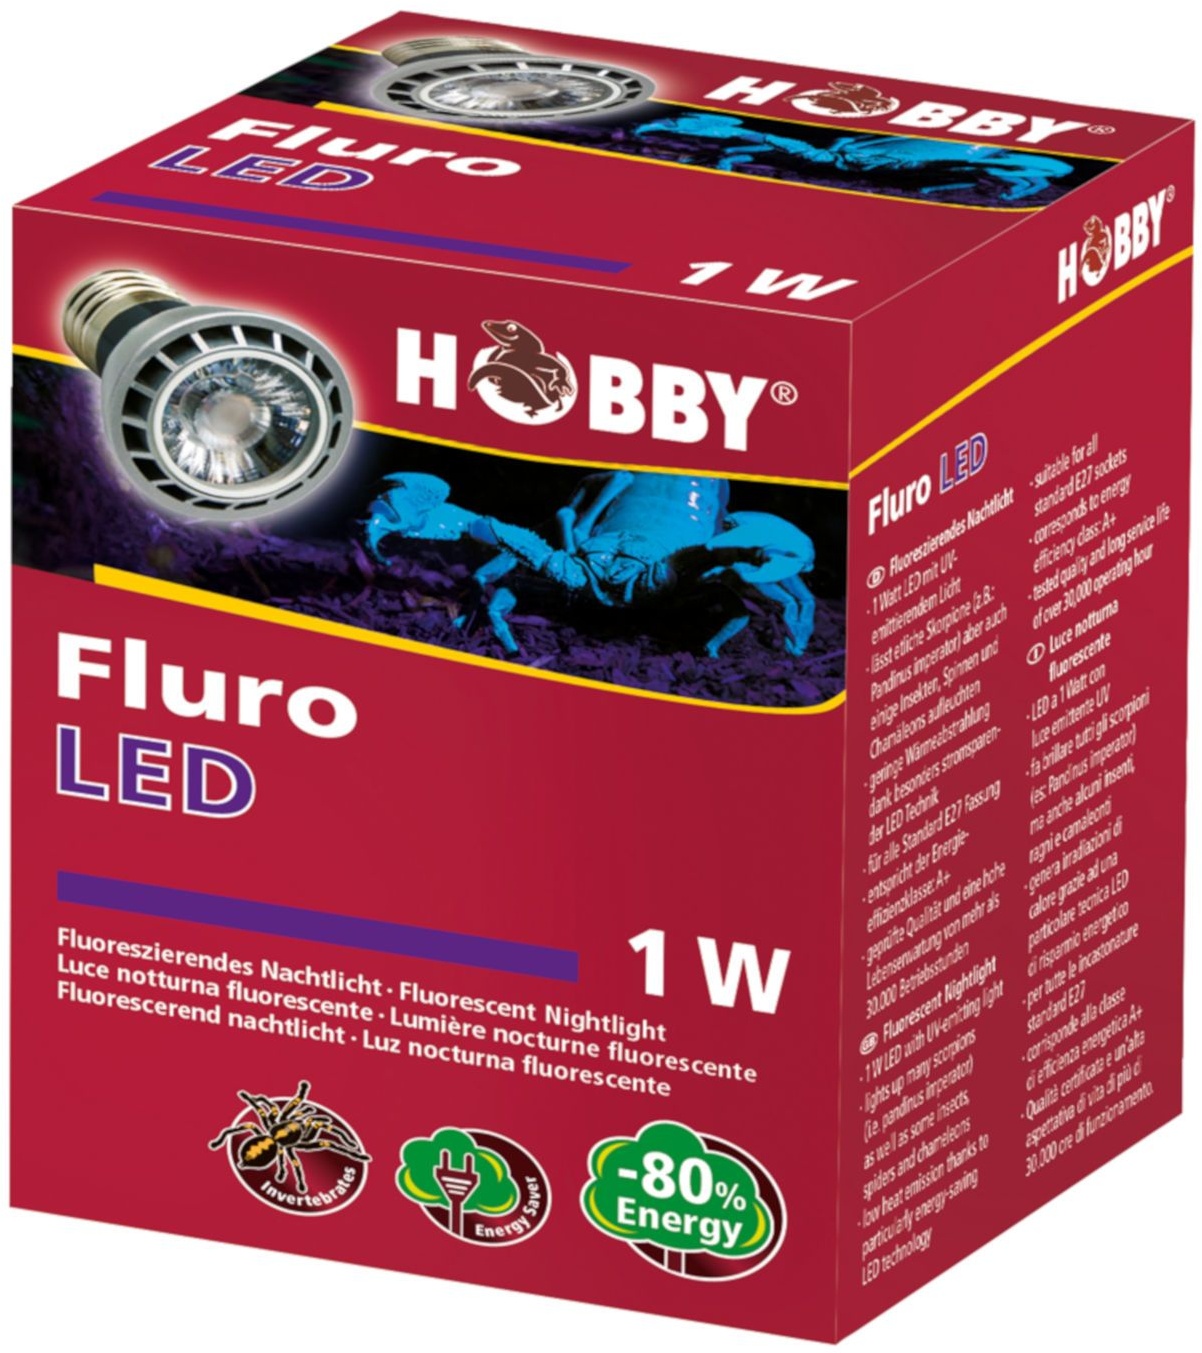 Hobby Fluro LED - Fluoreszierendes Nachtlicht 1 St